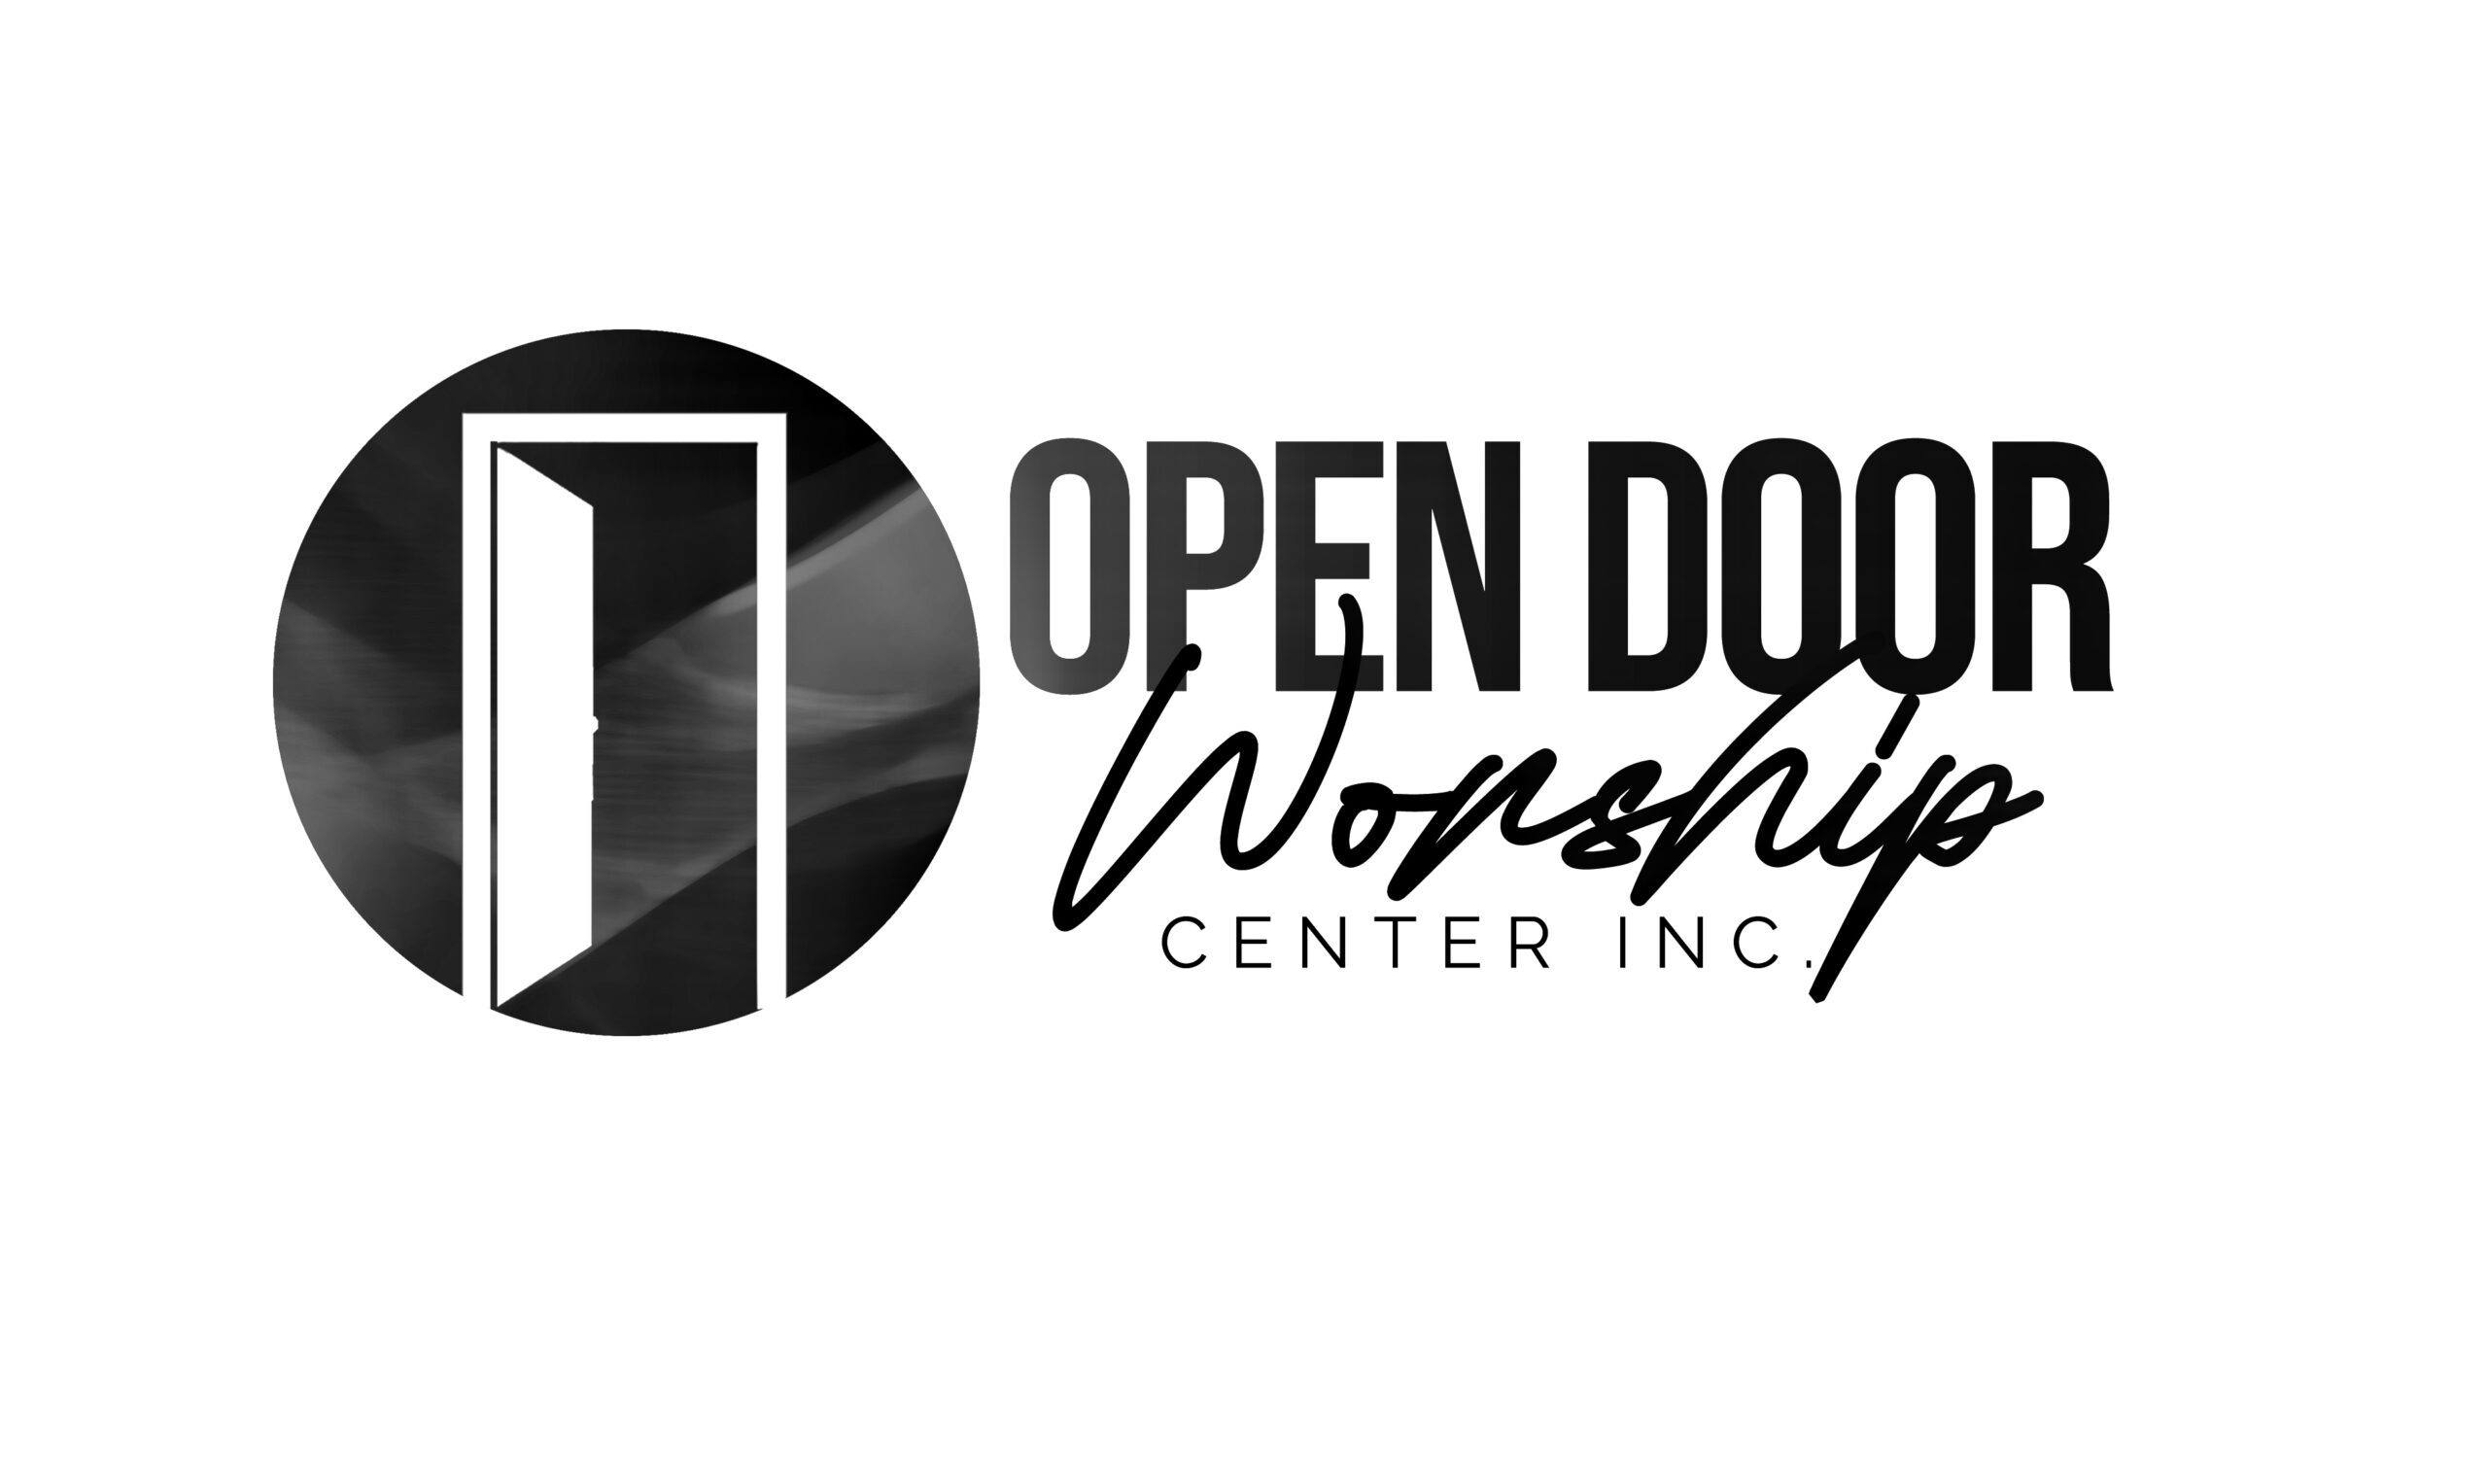 OPEN DOOR WORSHIP CENTER INC.